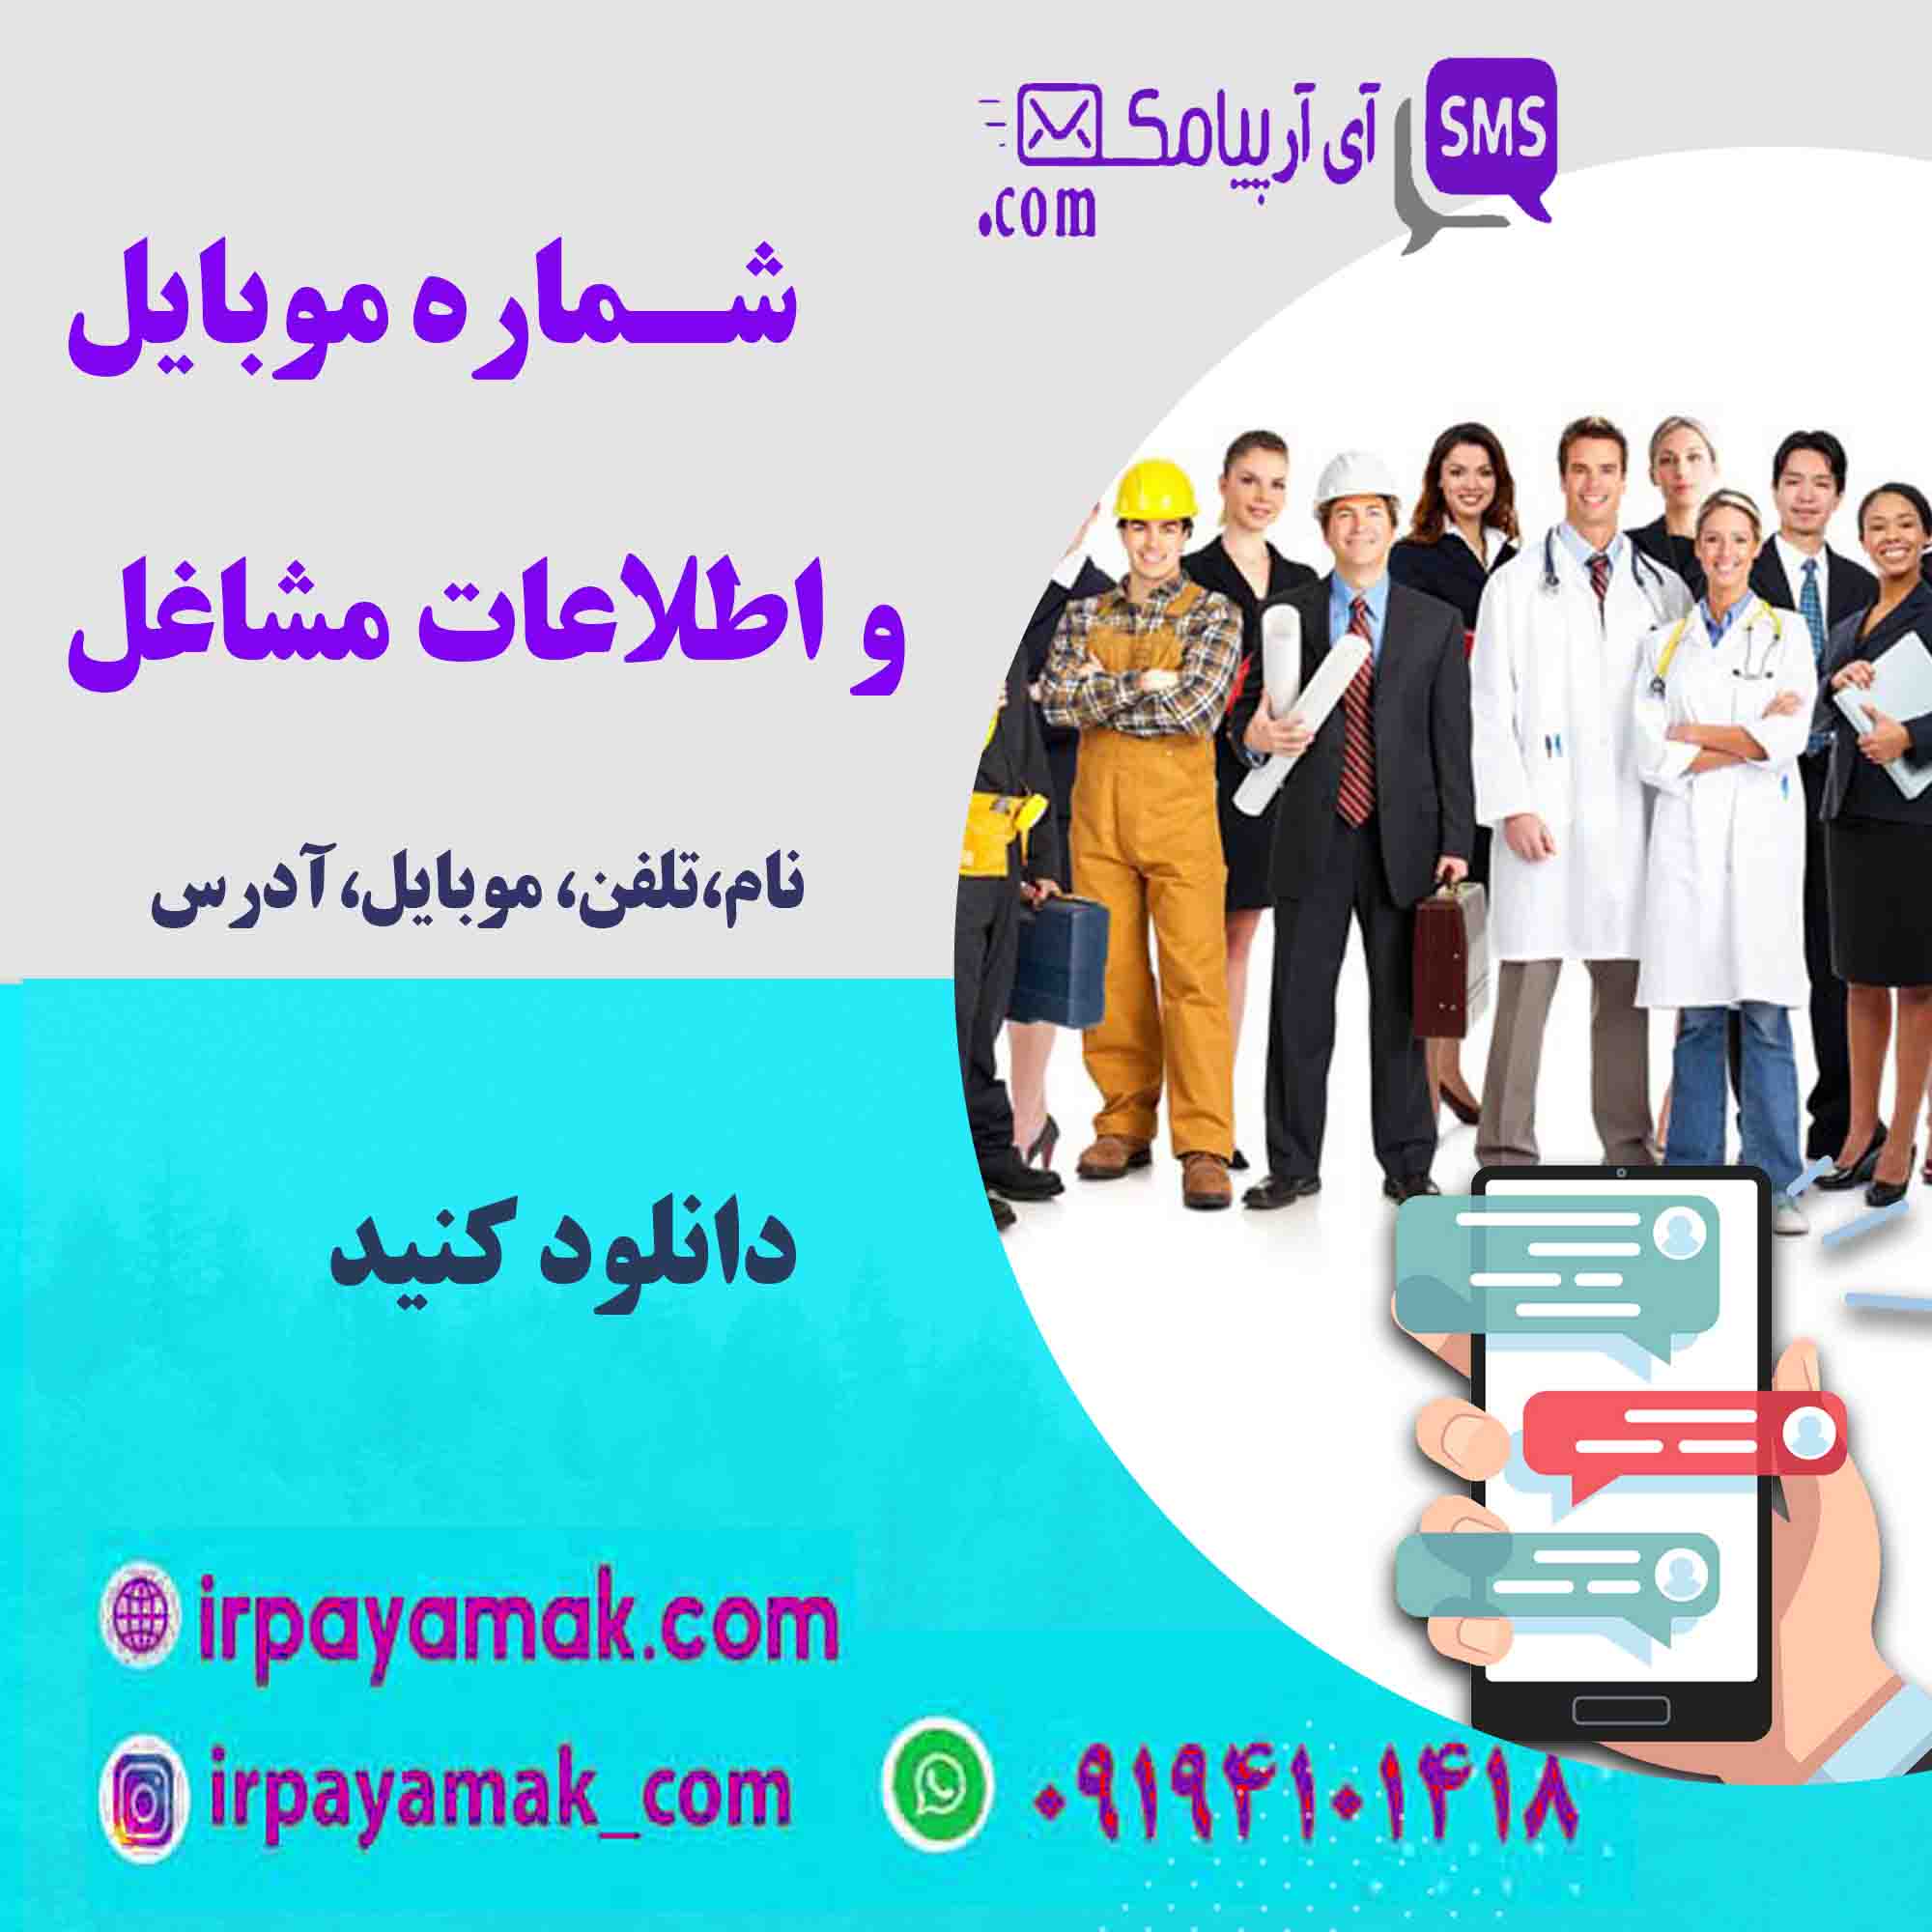 شماره موبایل و اطلاعات مشاغل خوزستان